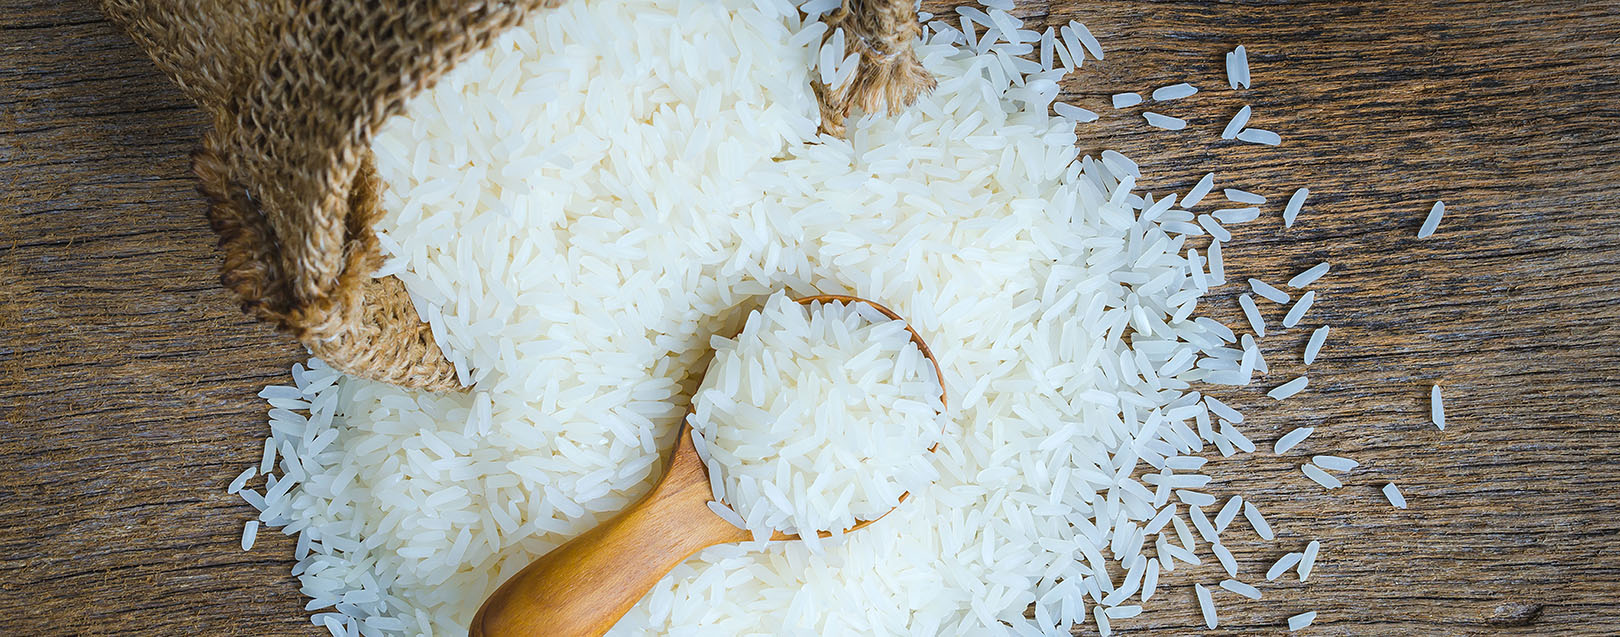 manfaat beras